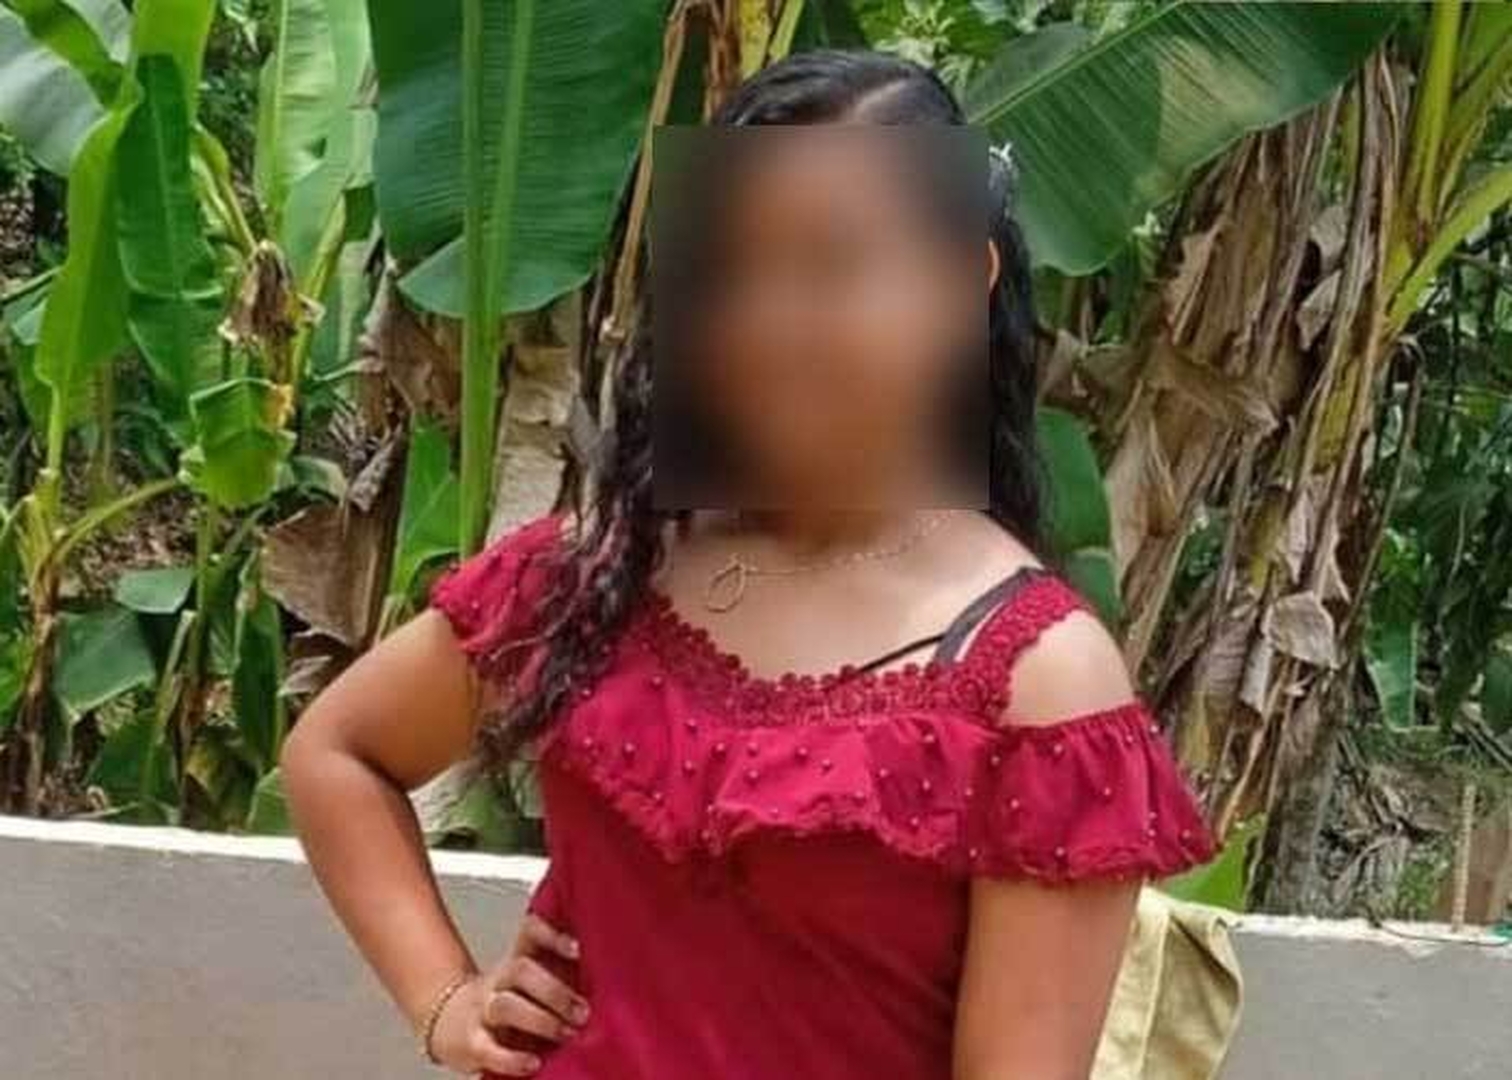  La ola de femicidios en el Caribe Norte de Nicaragua ha llegado a números alarmantes: 7 mujeres asesinadas en lo que va del año, la última es una niña de tan solo 12 años de edad. 